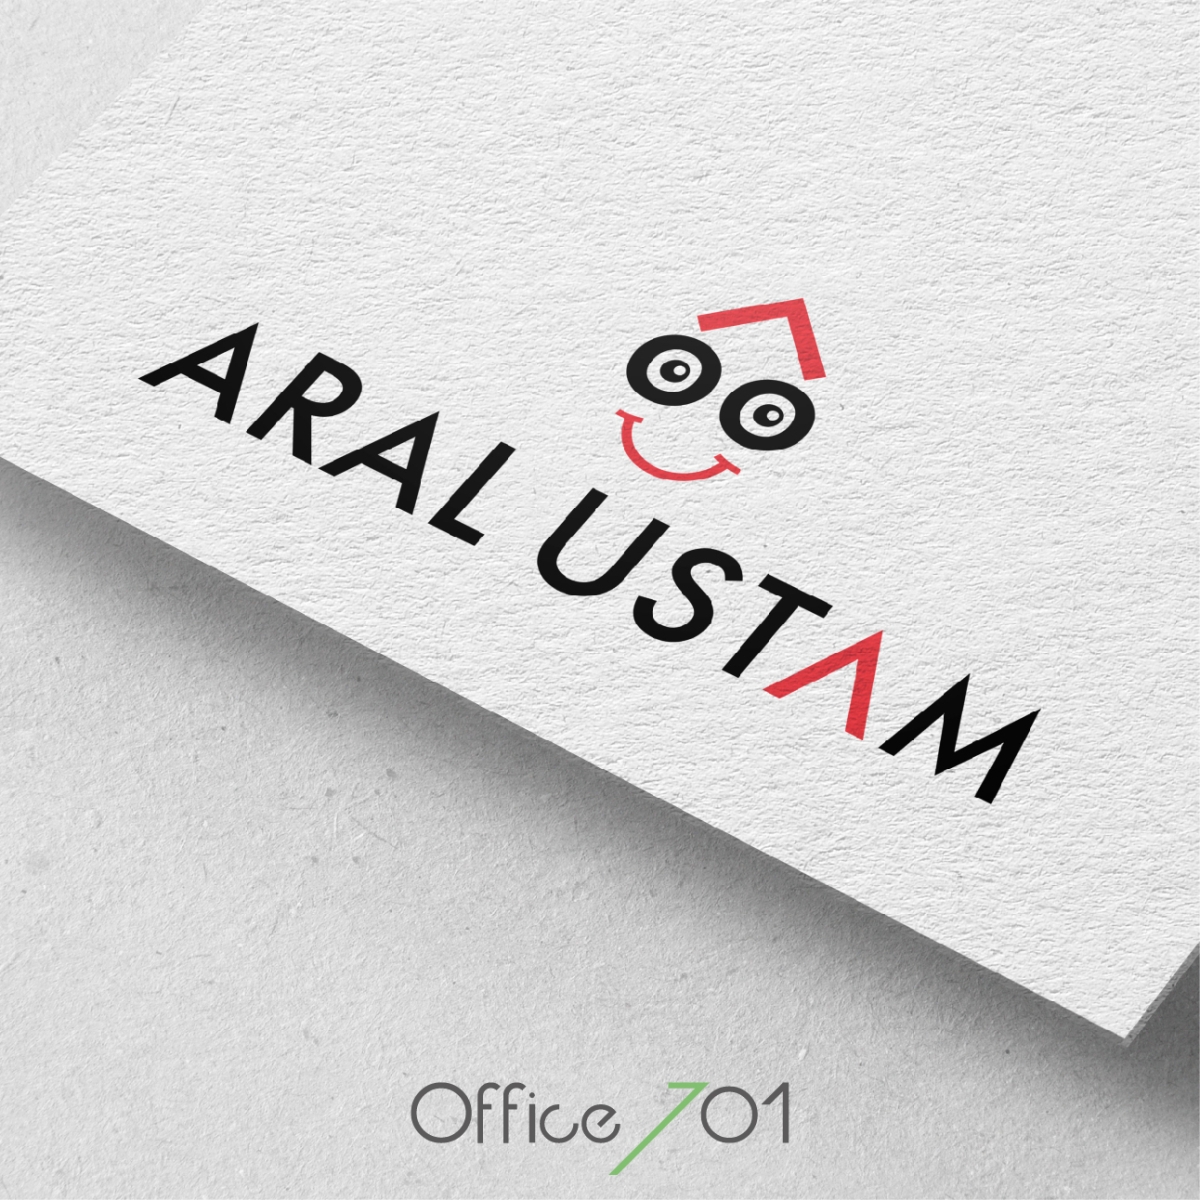 Office701 | Aral Ustam Logo Tasarımı